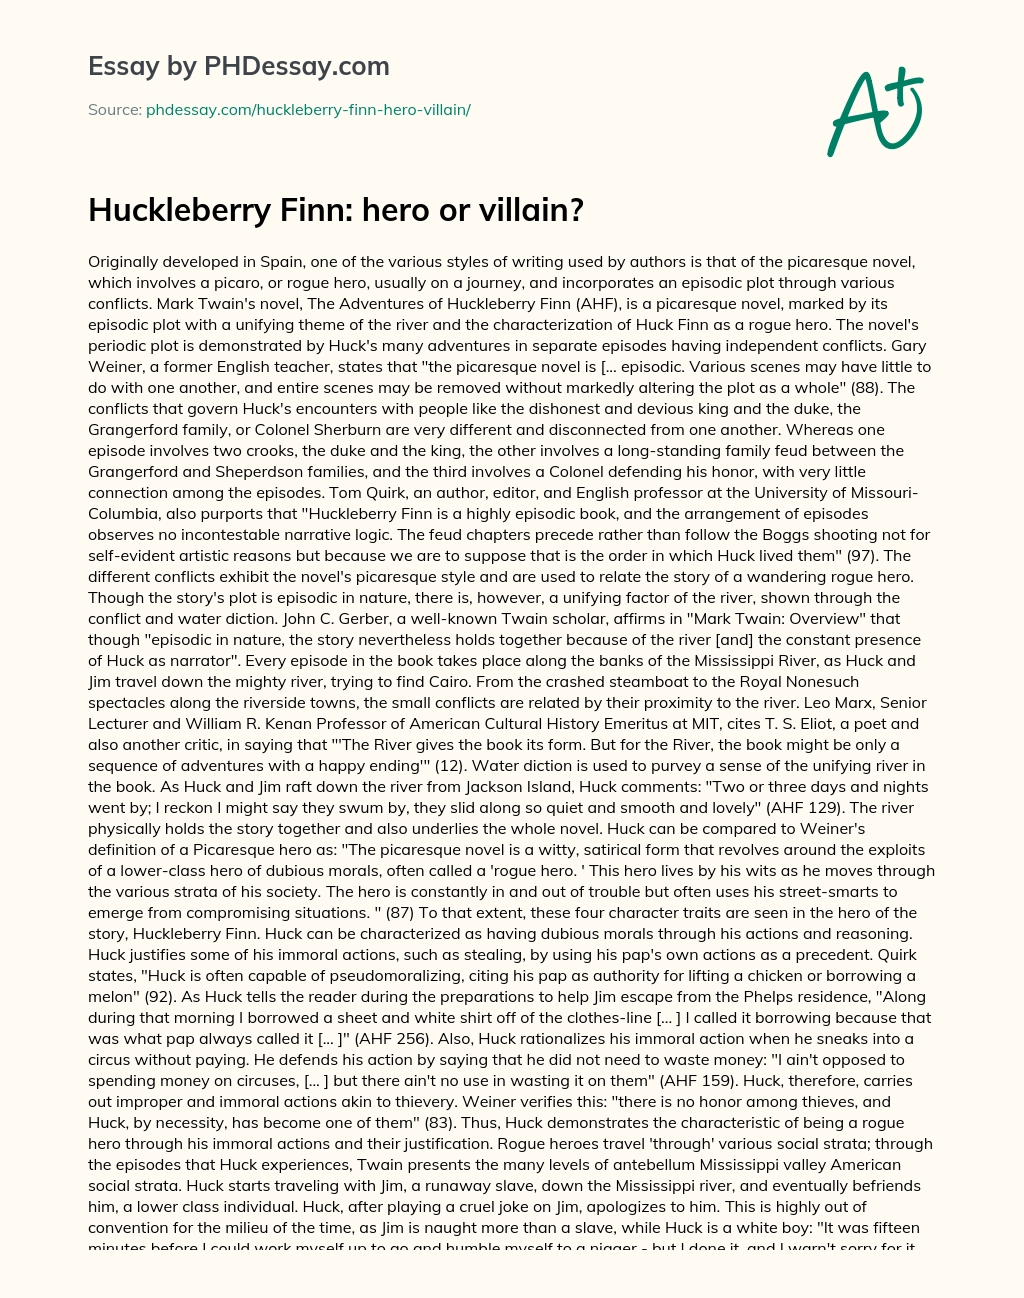 Huckleberry Finn: hero or villain? essay